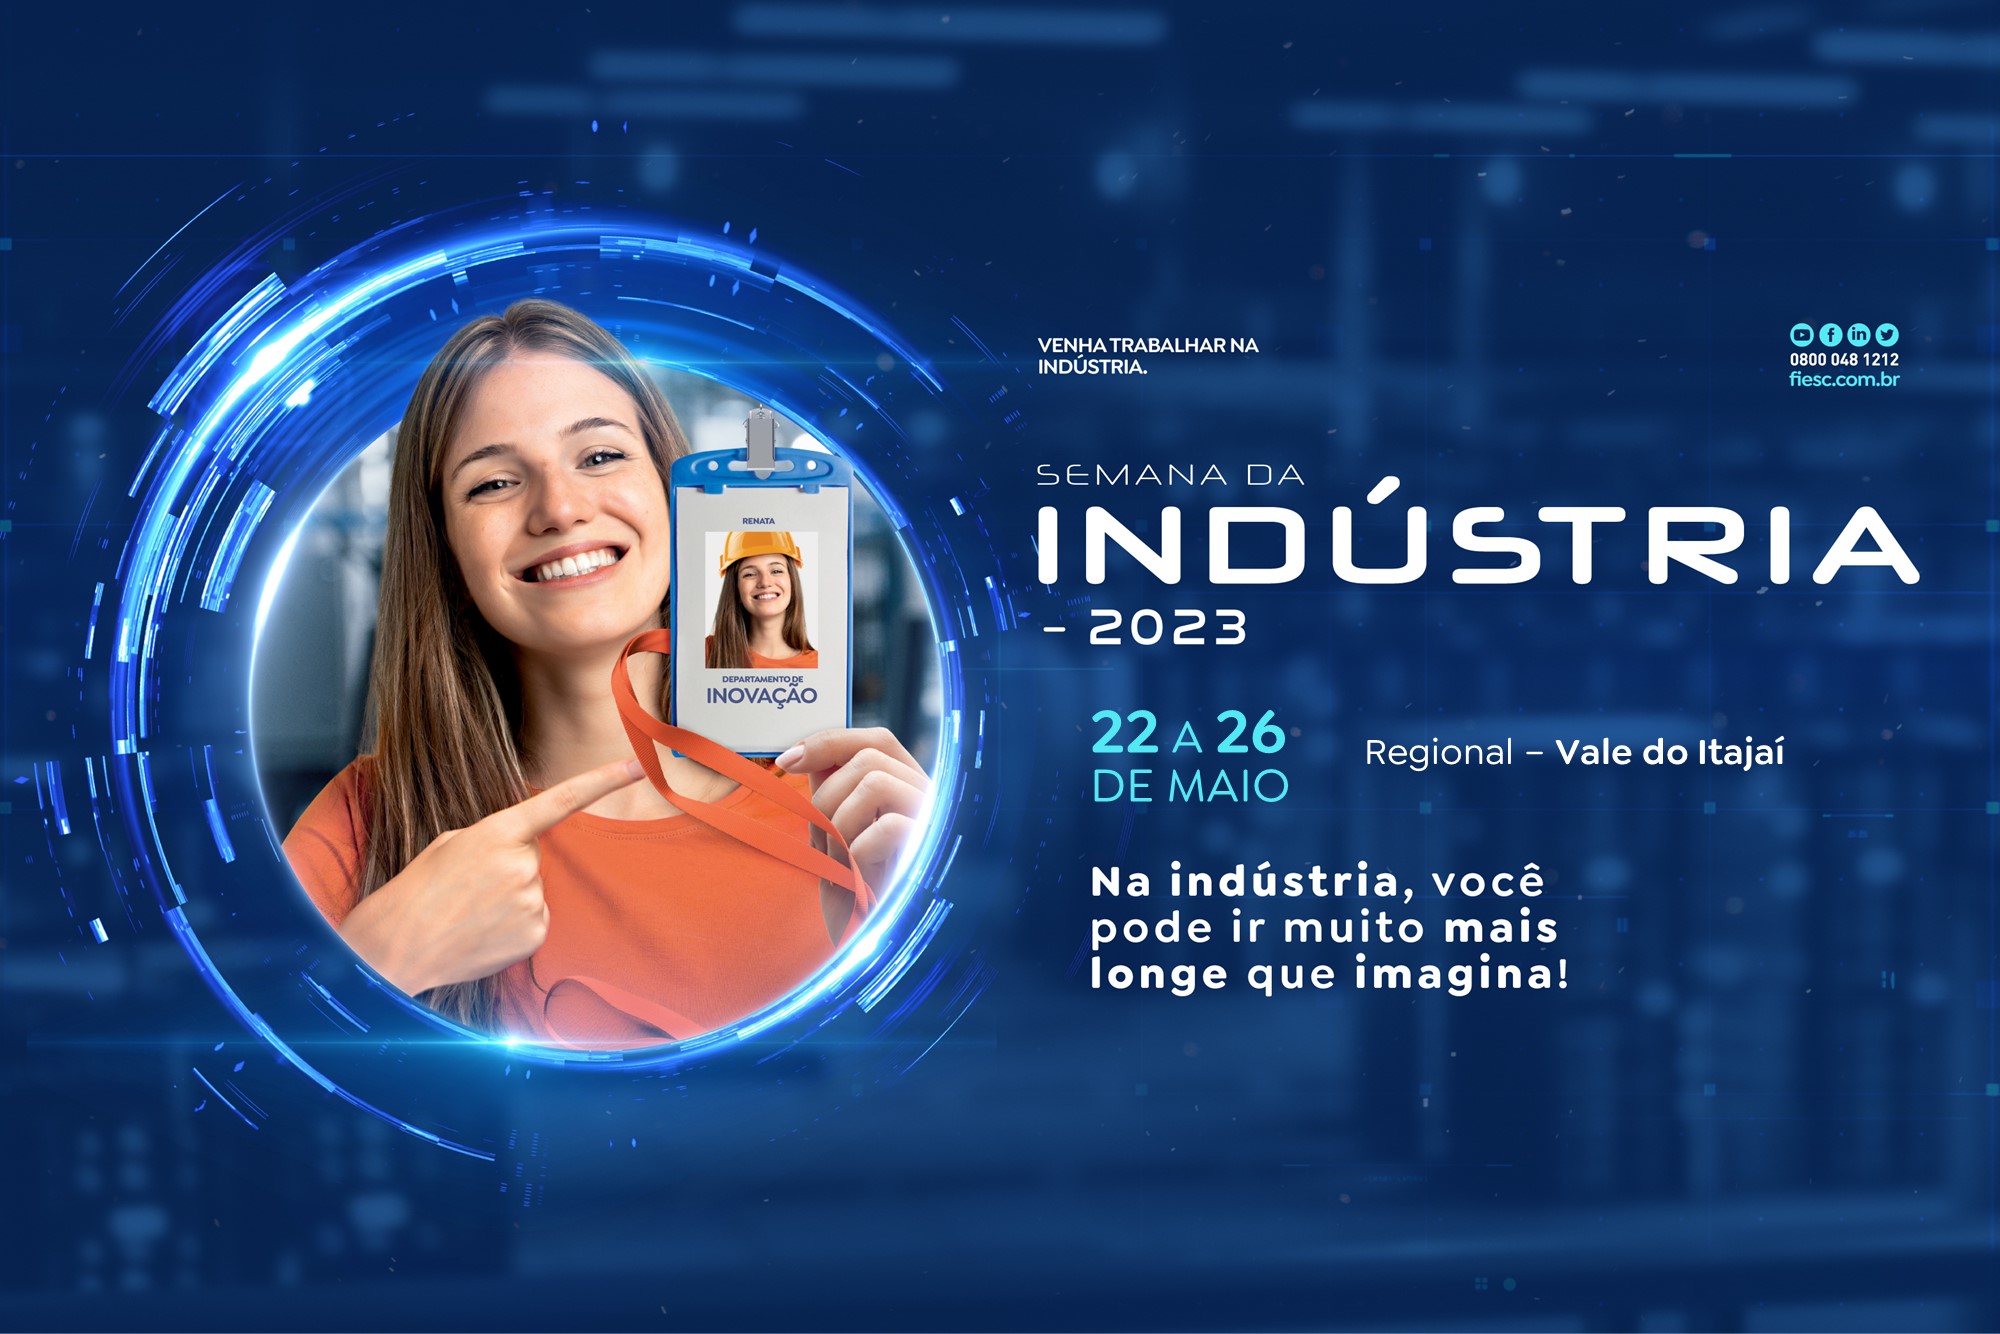 Semana da Indústria - Vale do Itajaí - 2023